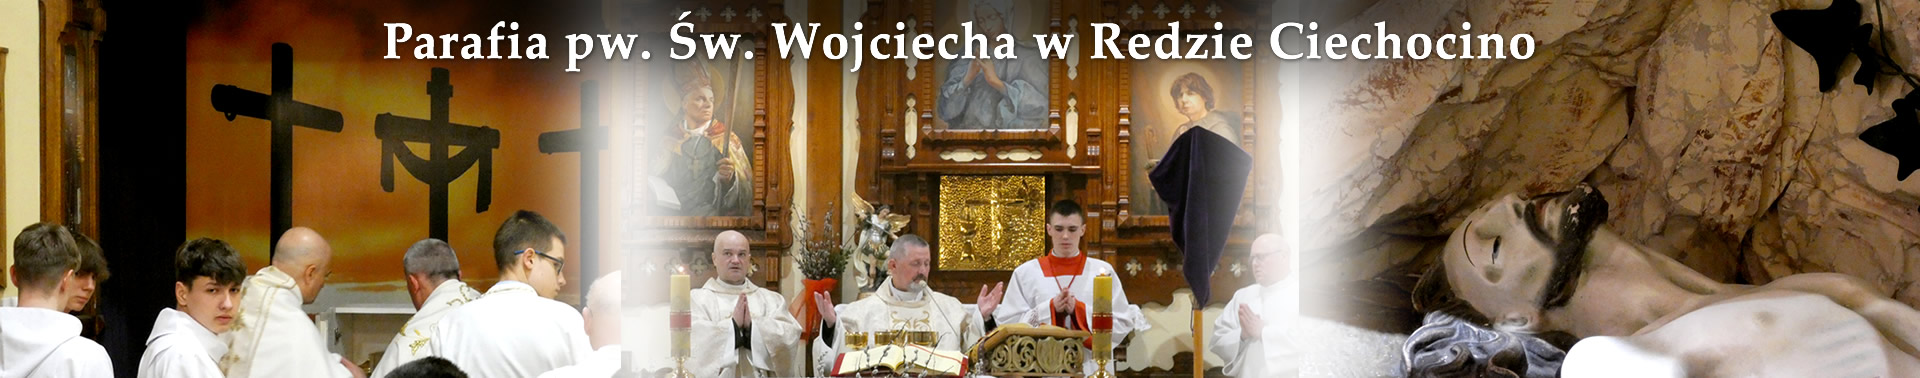 Parafia pw. Św. Wojciecha